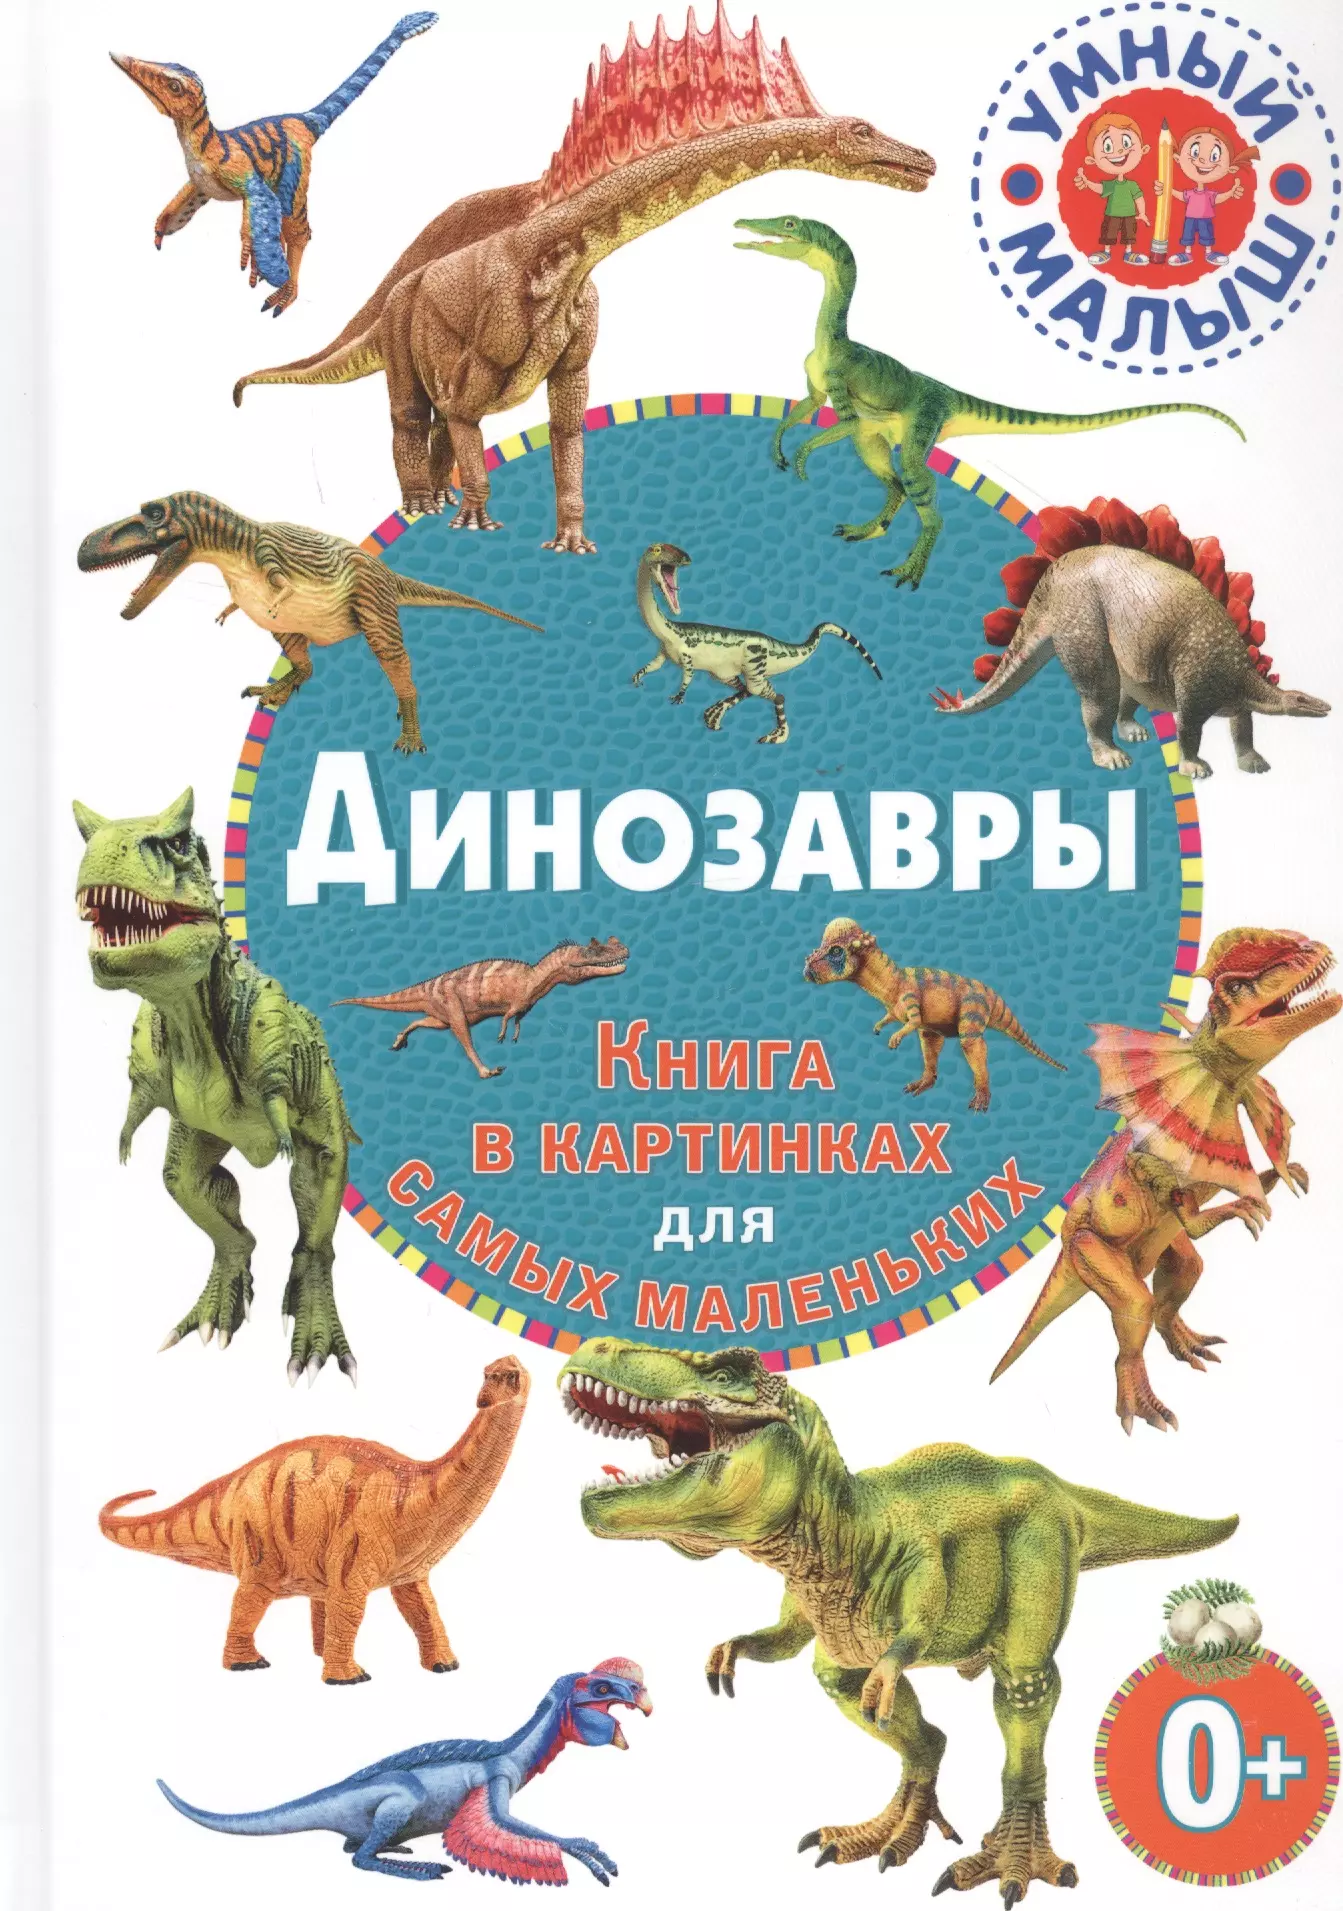 Динозавры. Книга в картинках для самых маленьких английский словарь в картинках для самых маленьких